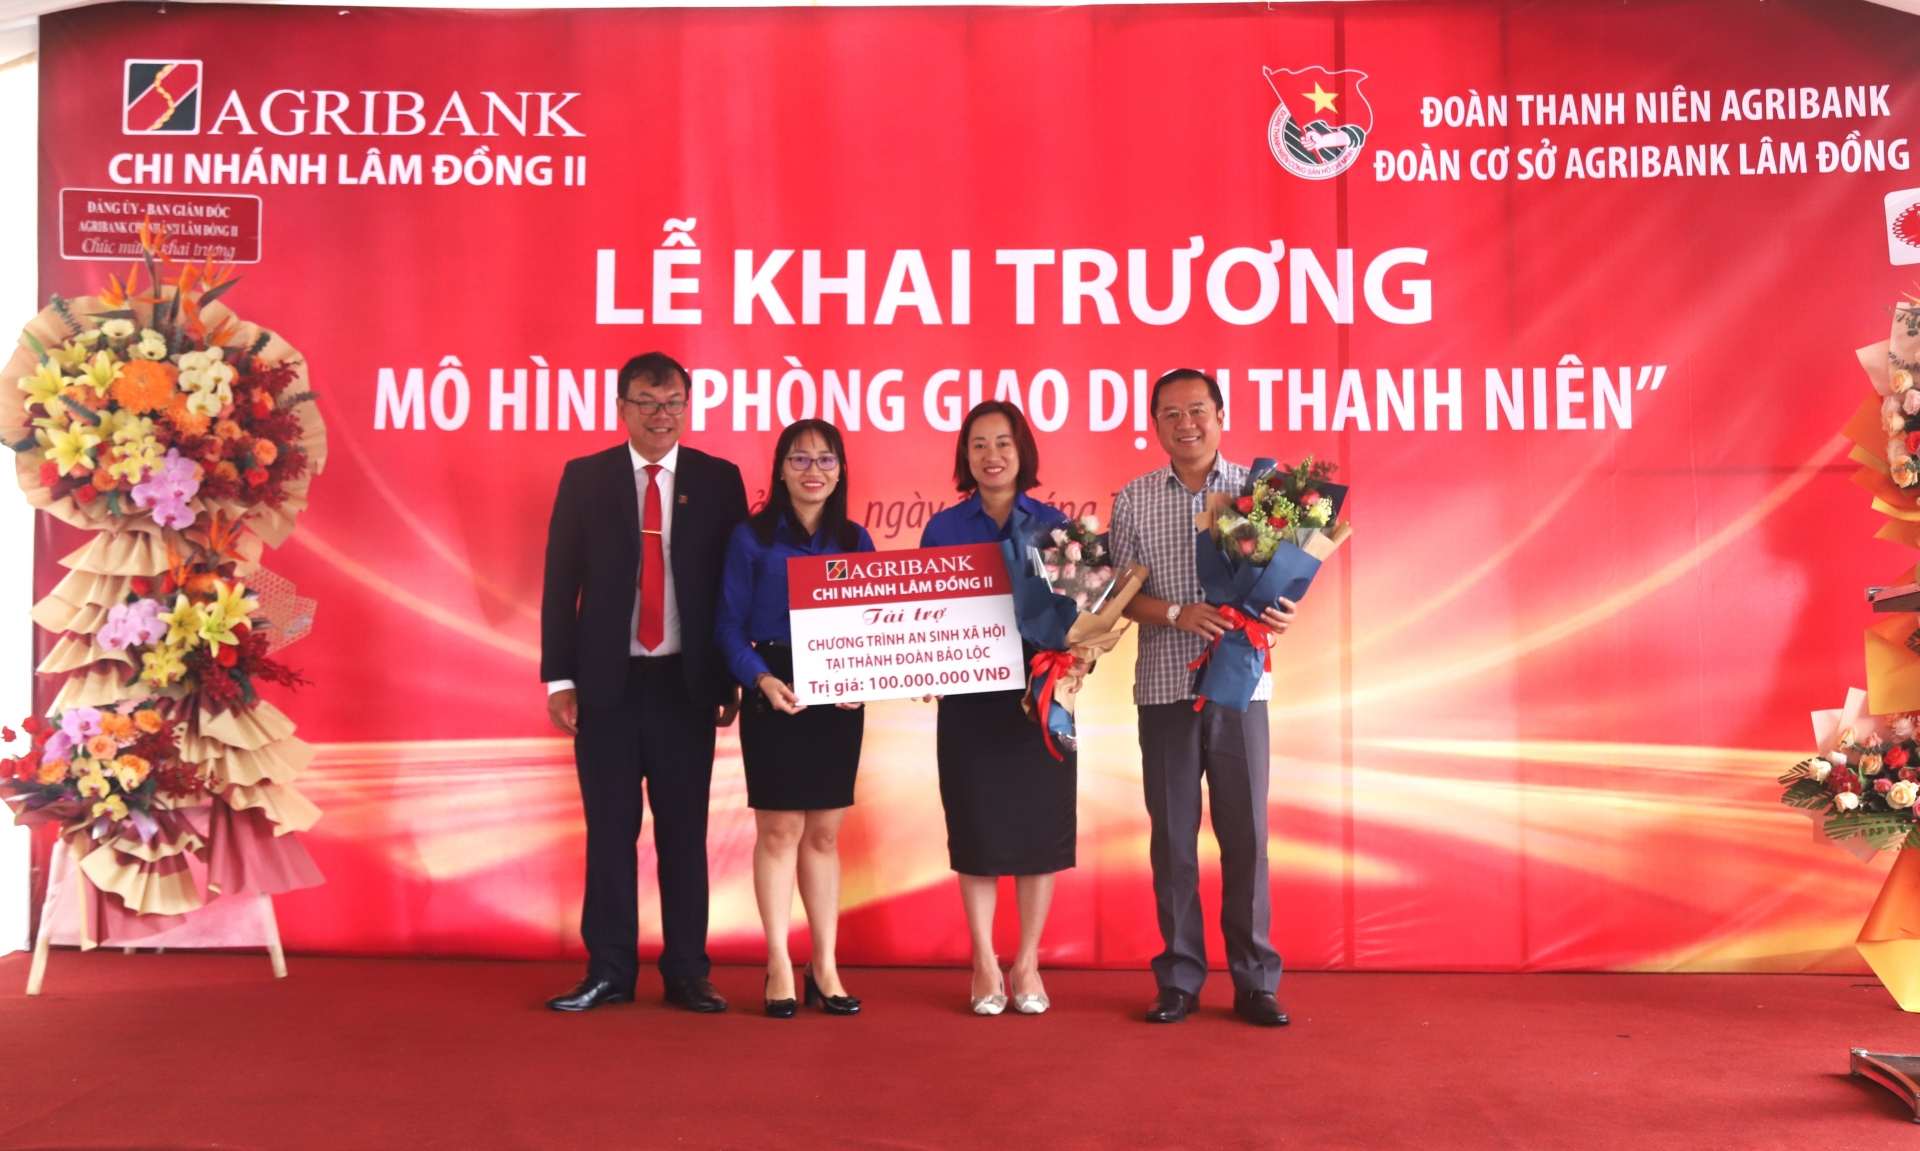 Agribank chi nhánh Lâm Đồng II trao công trình an sinh xã hội trị giá 100 triệu đồng cho Thành Đoàn Bảo Lộc